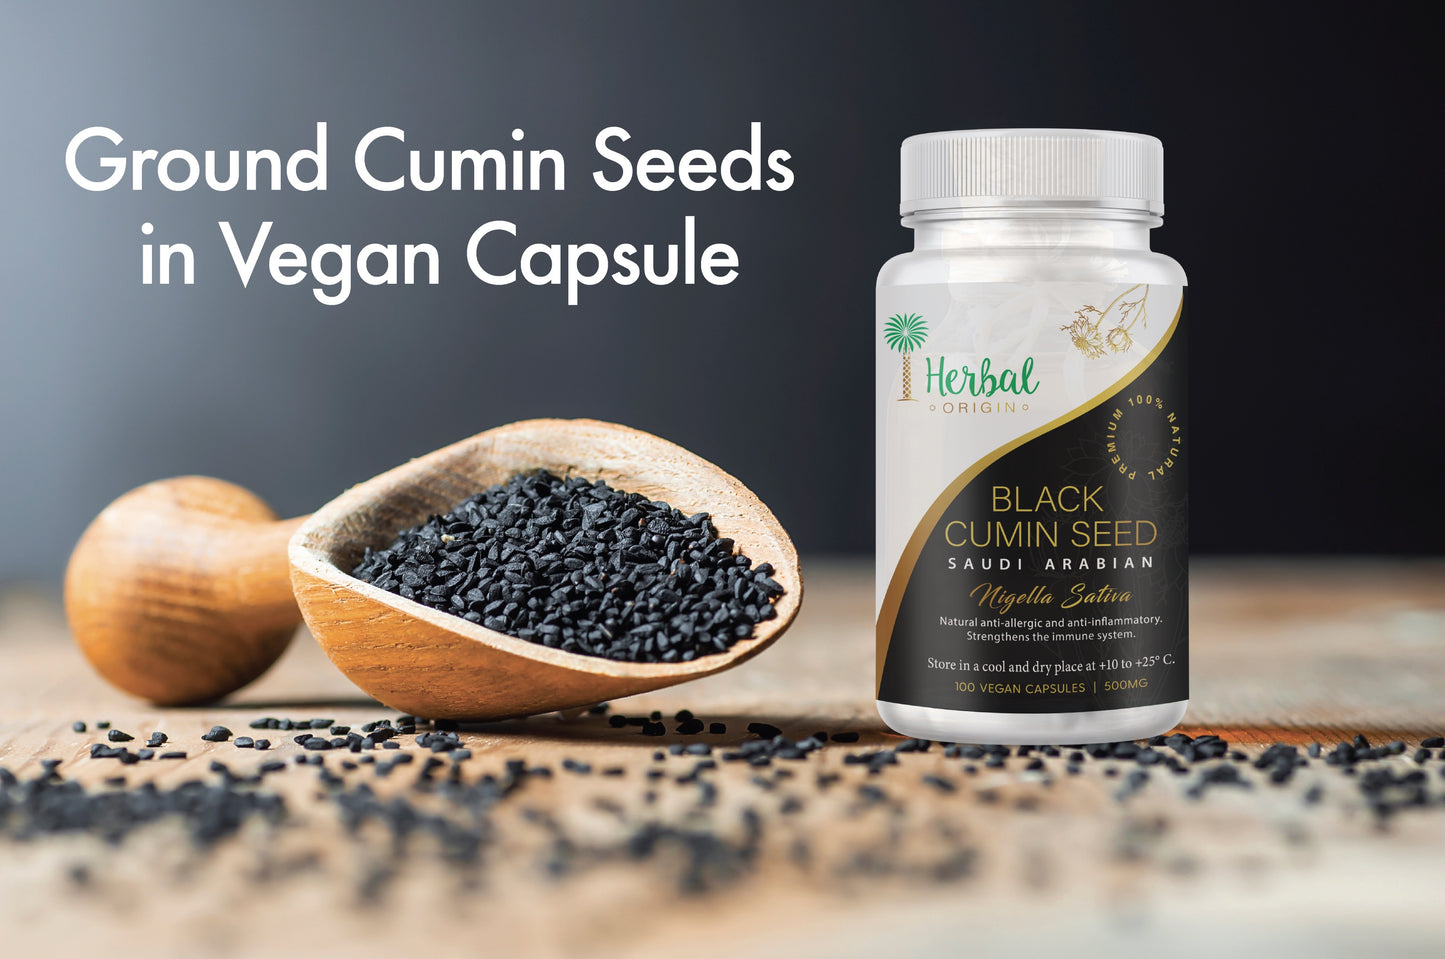 Black Cumin Seed Supplement (Nigella Sativa) | Premium Sort Saudi Arabian | 100 Vegan Capsule - Serving size 1500mg